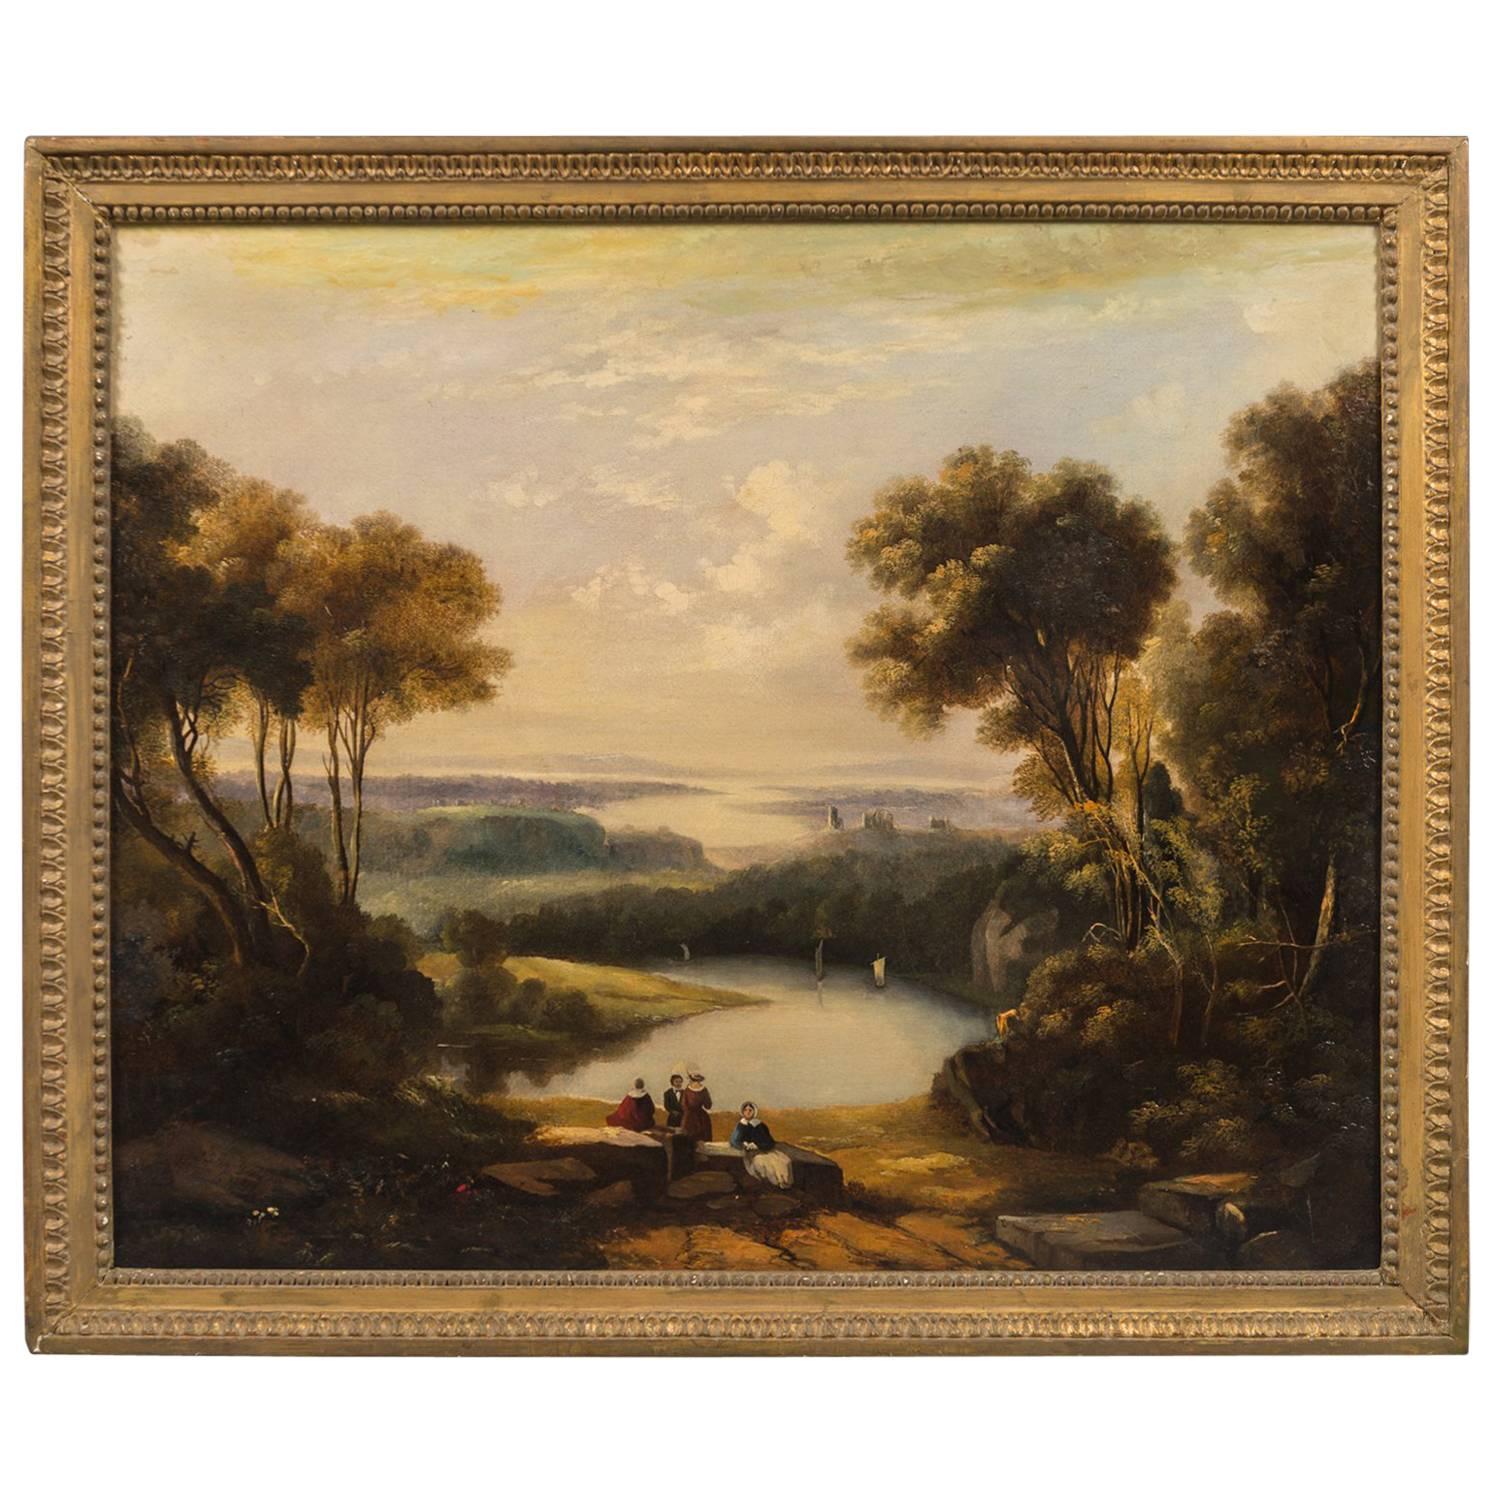 Huile sur toile britannique d'Anthony Vandyke Copley Fielding, 1787-1855 en vente